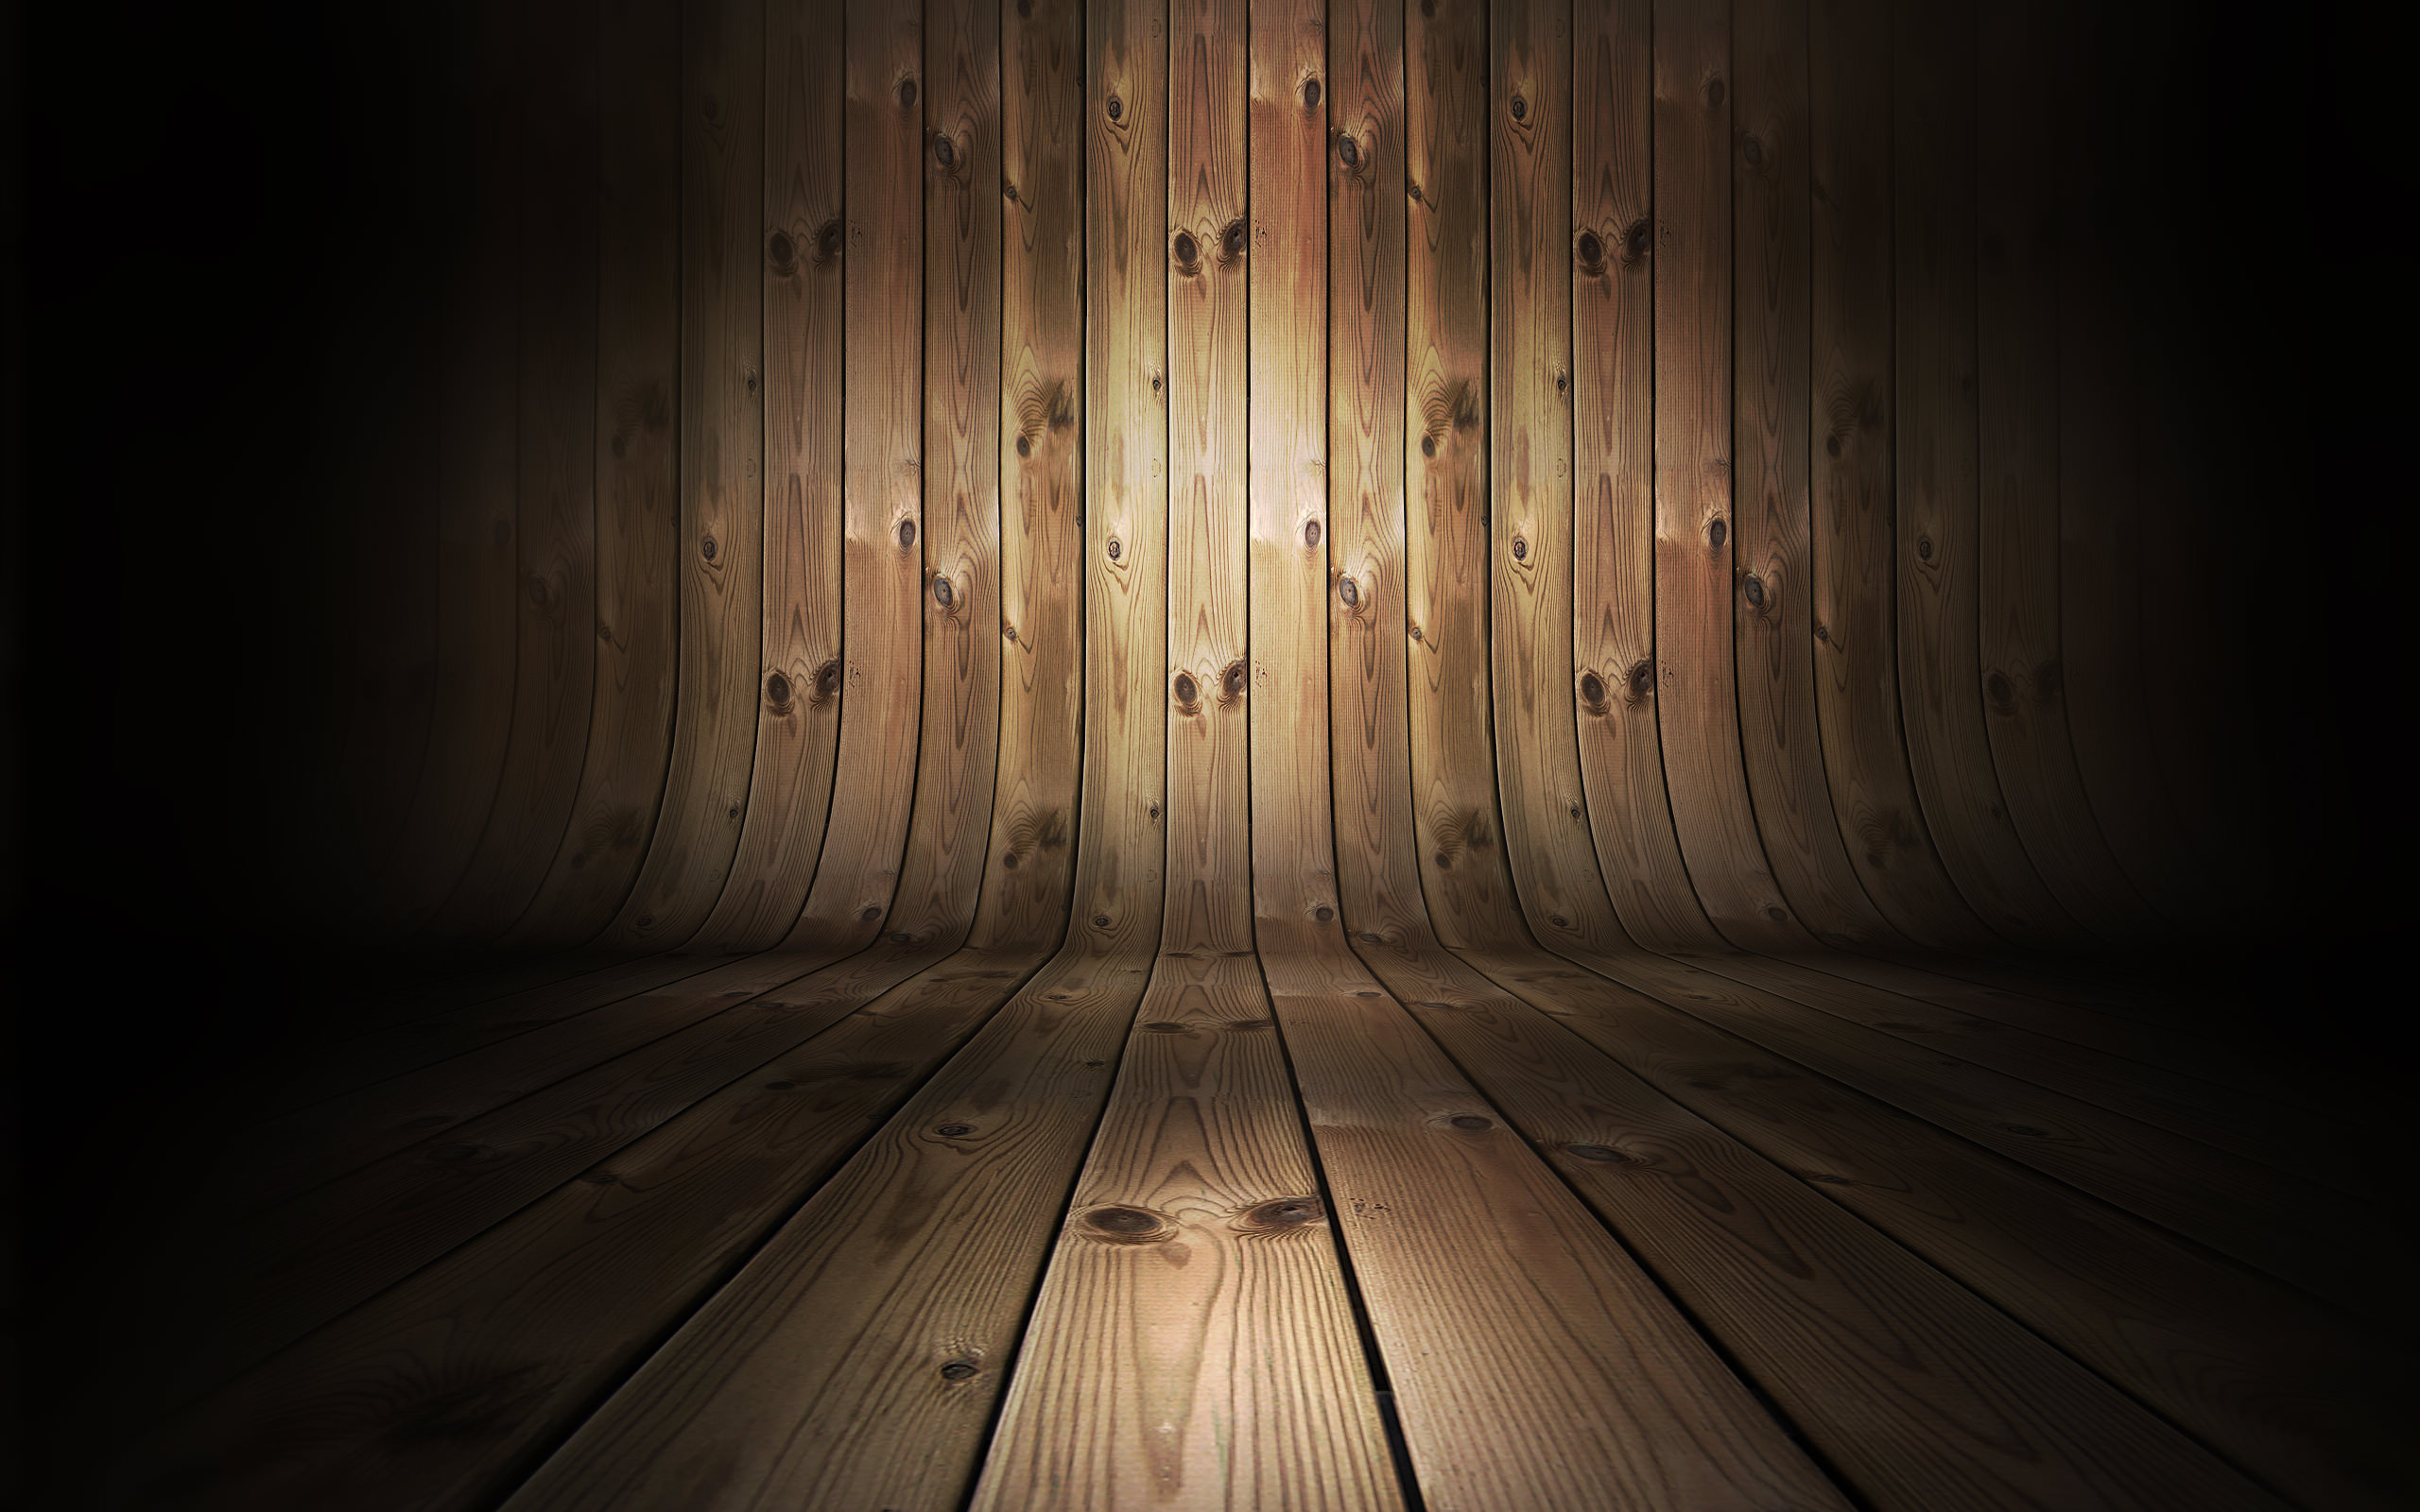 Nền gỗ - một sự lựa chọn đơn giản và đẹp mắt cho việc trang trí không gian. Hãy xem hình ảnh để thấy được hiệu ứng độc đáo mà nền gỗ mang lại.